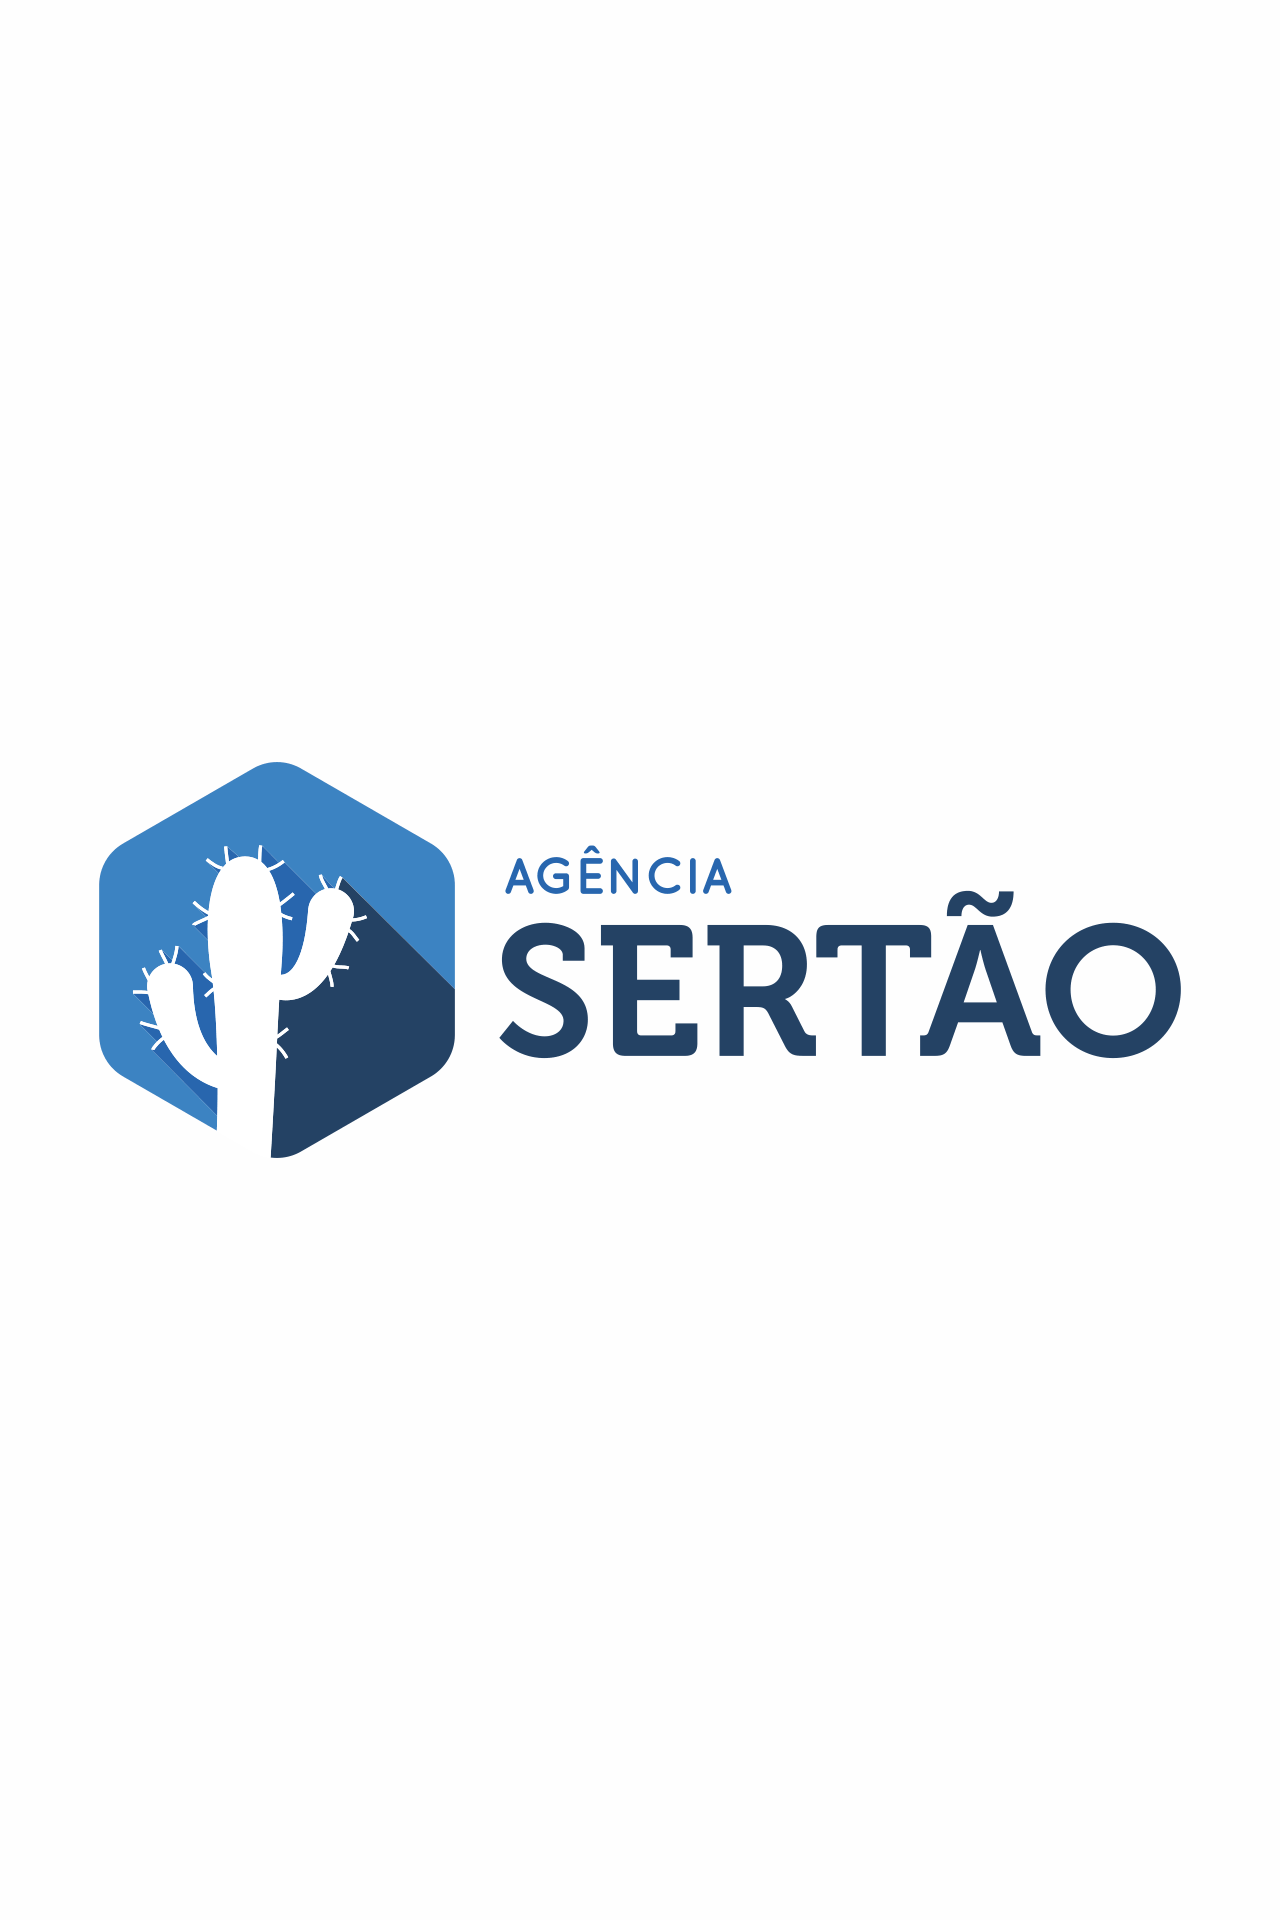 Destaques Agência Sertão – 13 de outubro